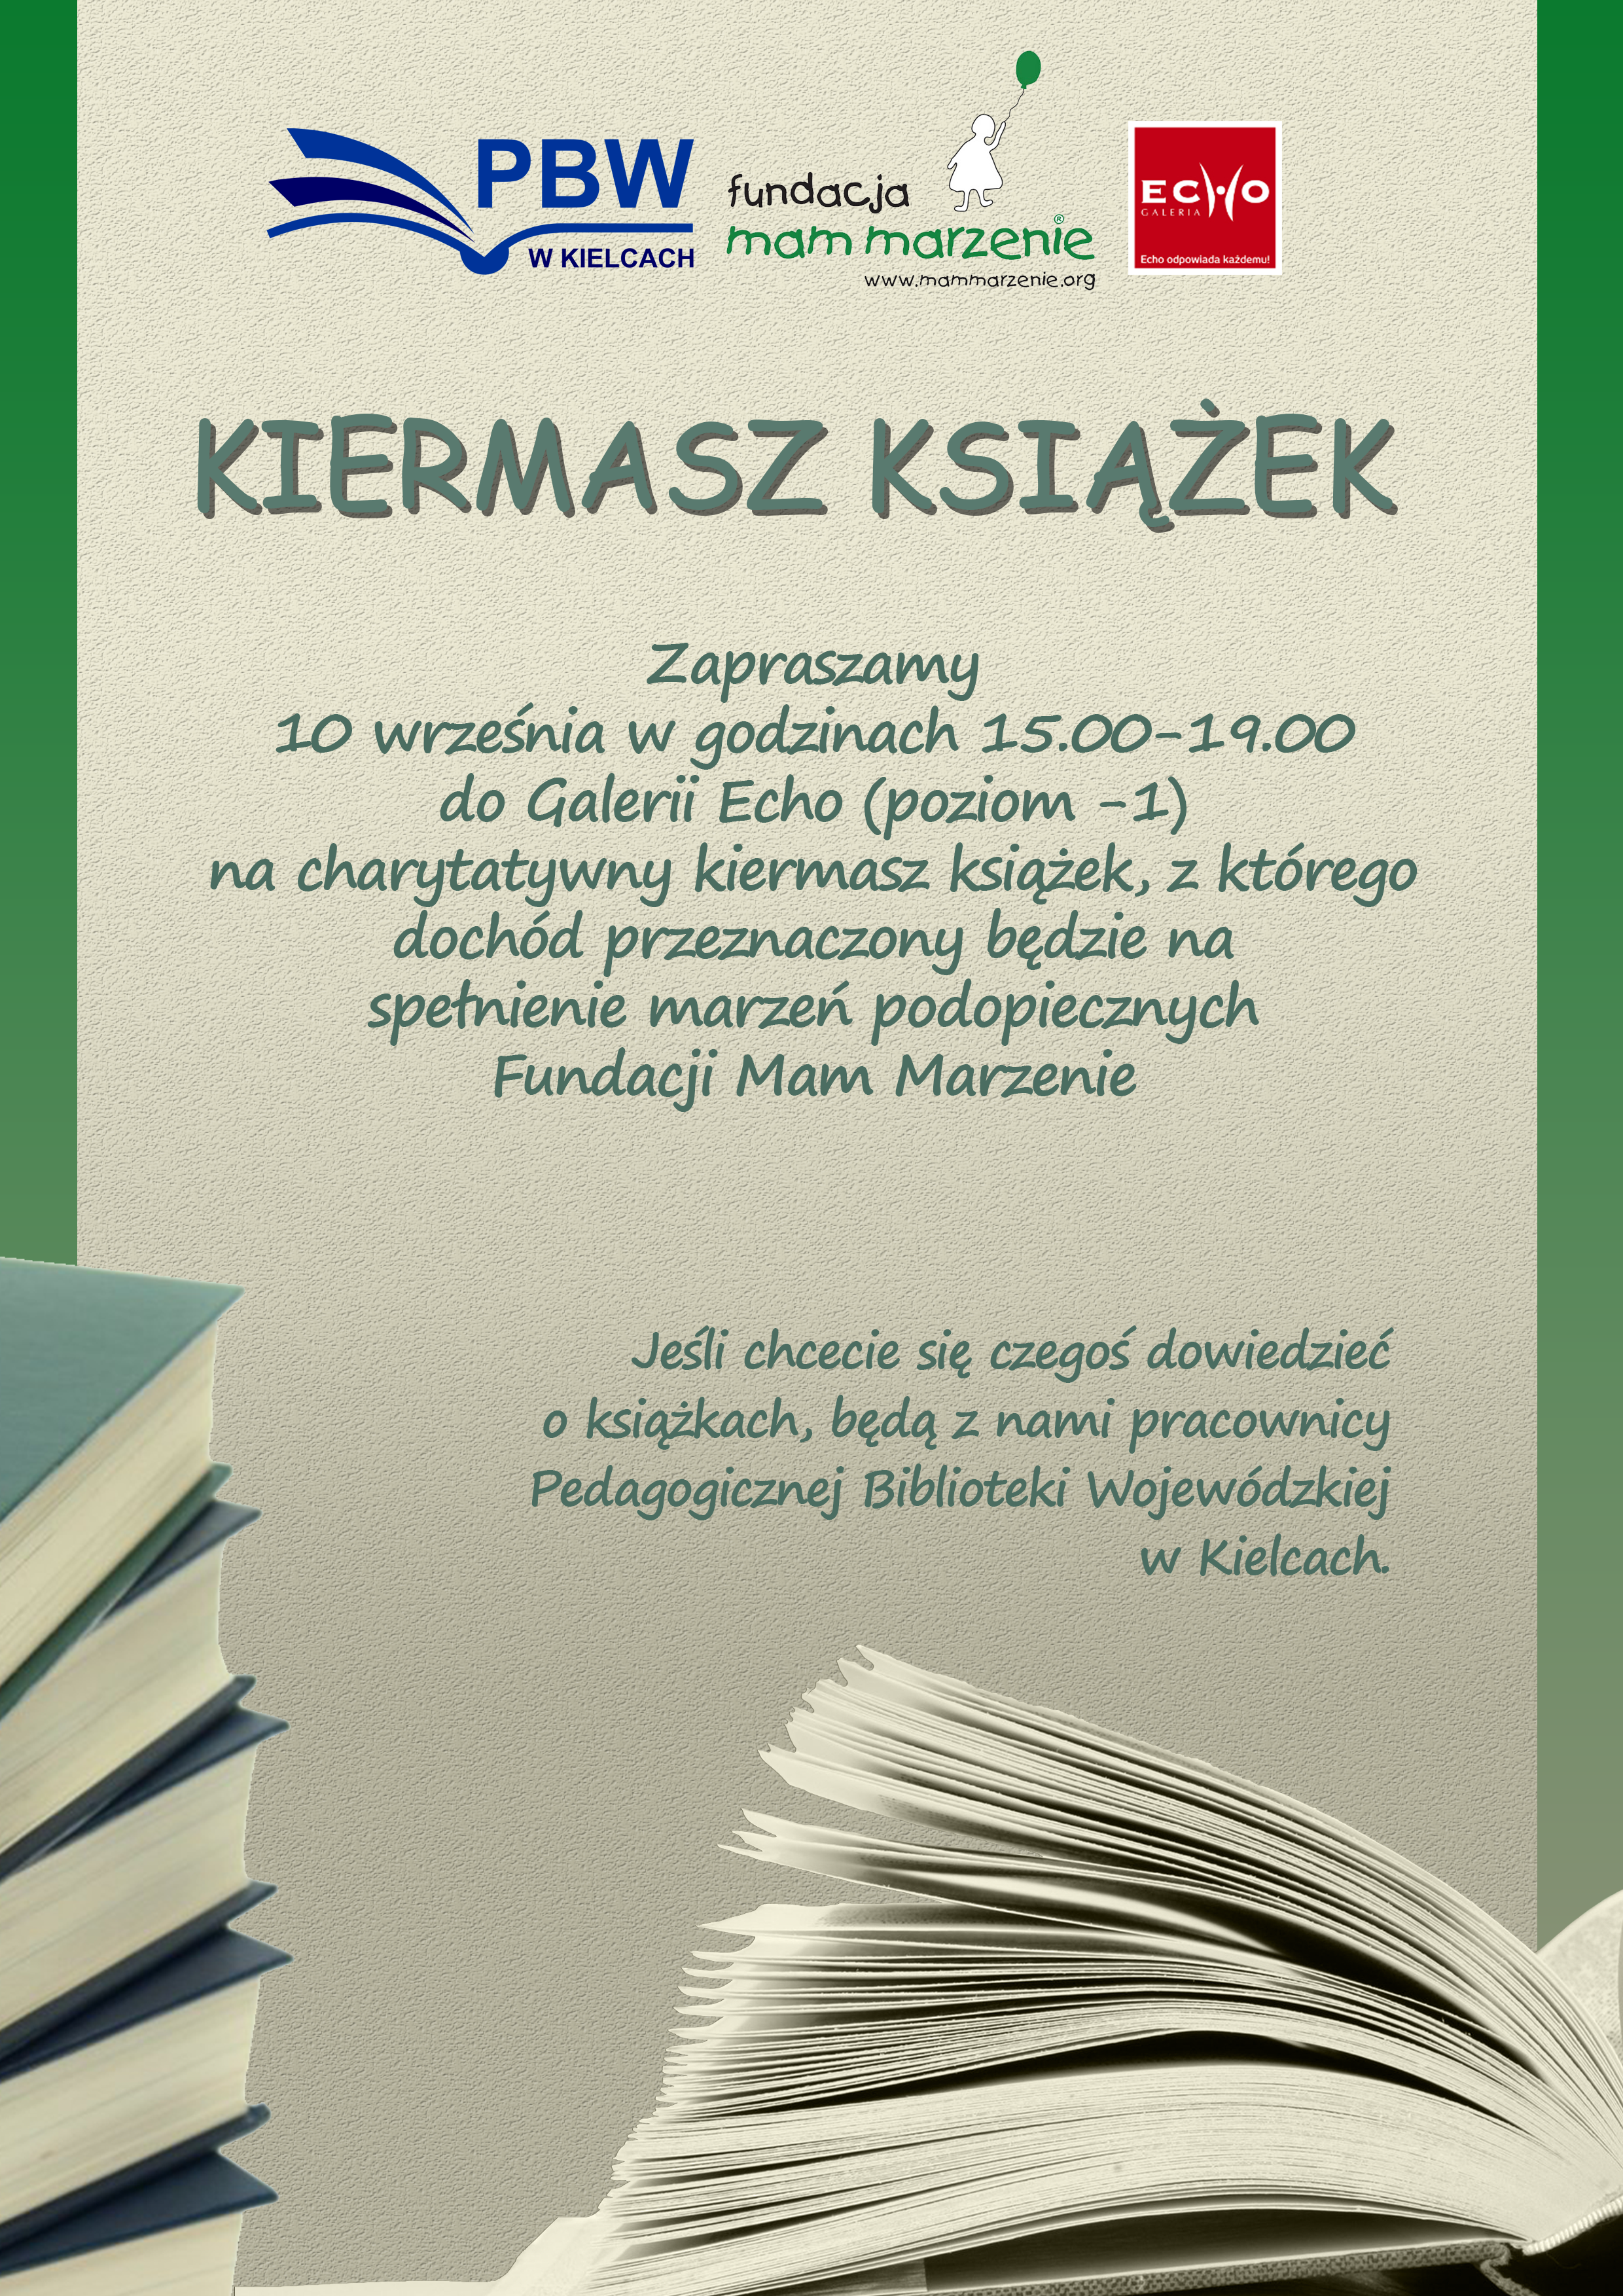 Pedagogiczna Biblioteka Wojewódzka w Kielcach wraz z Fundacją Mam Marzenie pomogą spełniać marzenia ‼️